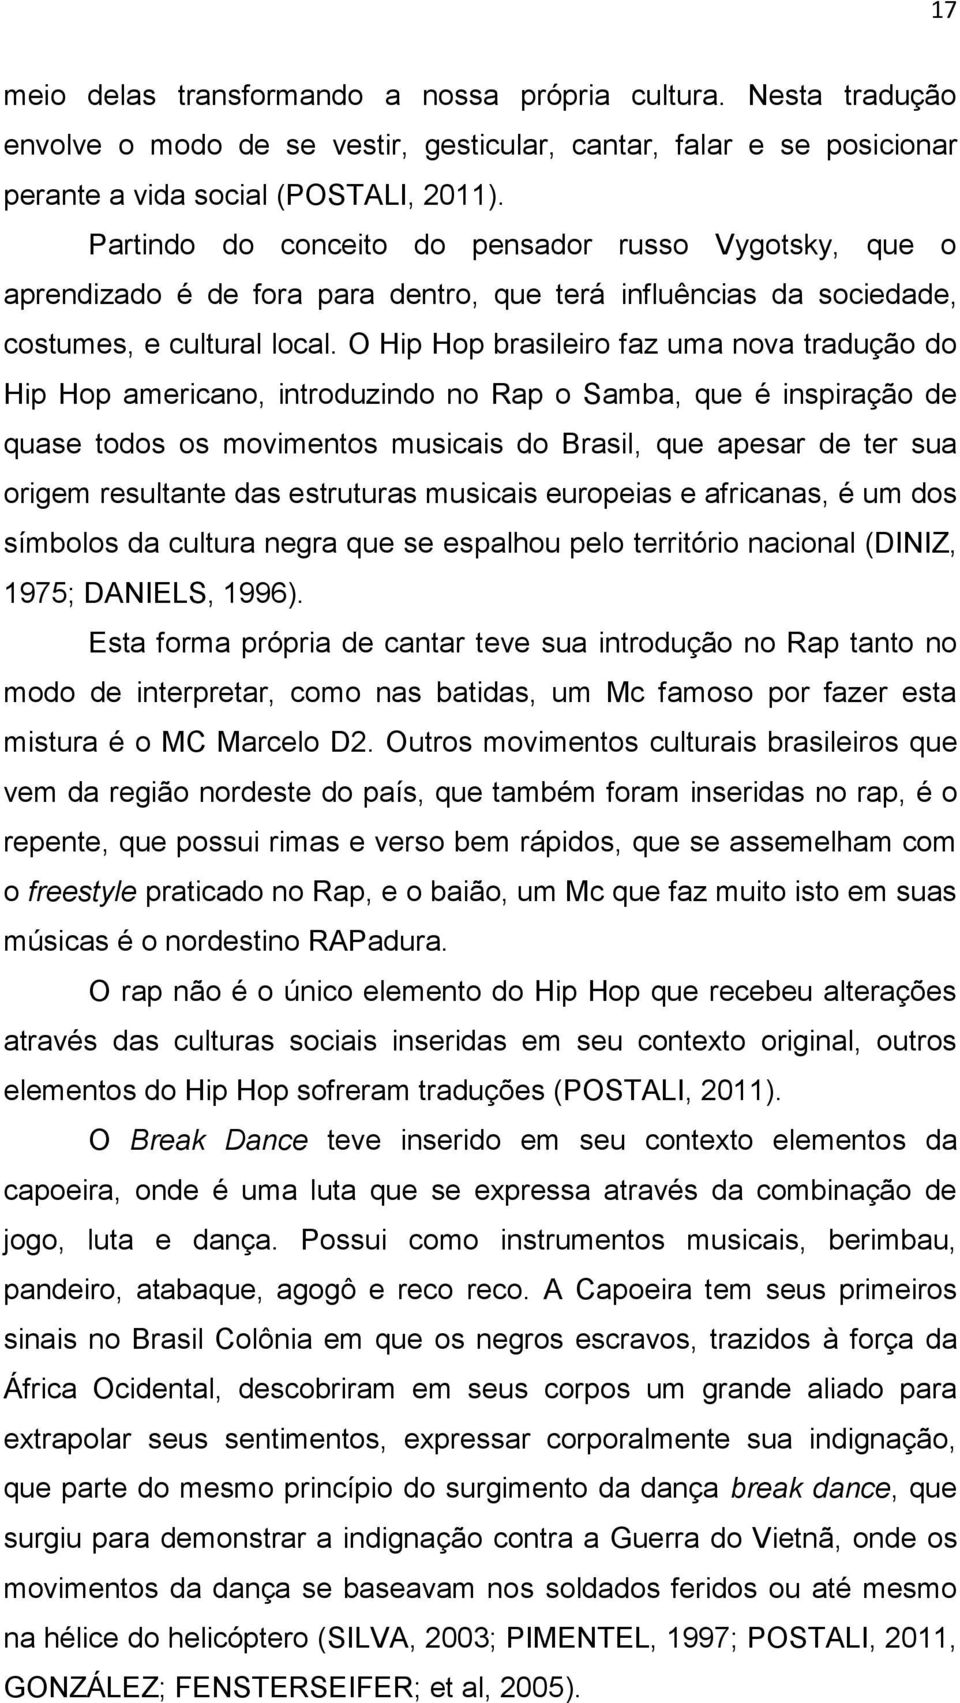 O Hip Hop brasileiro faz uma nova tradução do Hip Hop americano, introduzindo no Rap o Samba, que é inspiração de quase todos os movimentos musicais do Brasil, que apesar de ter sua origem resultante